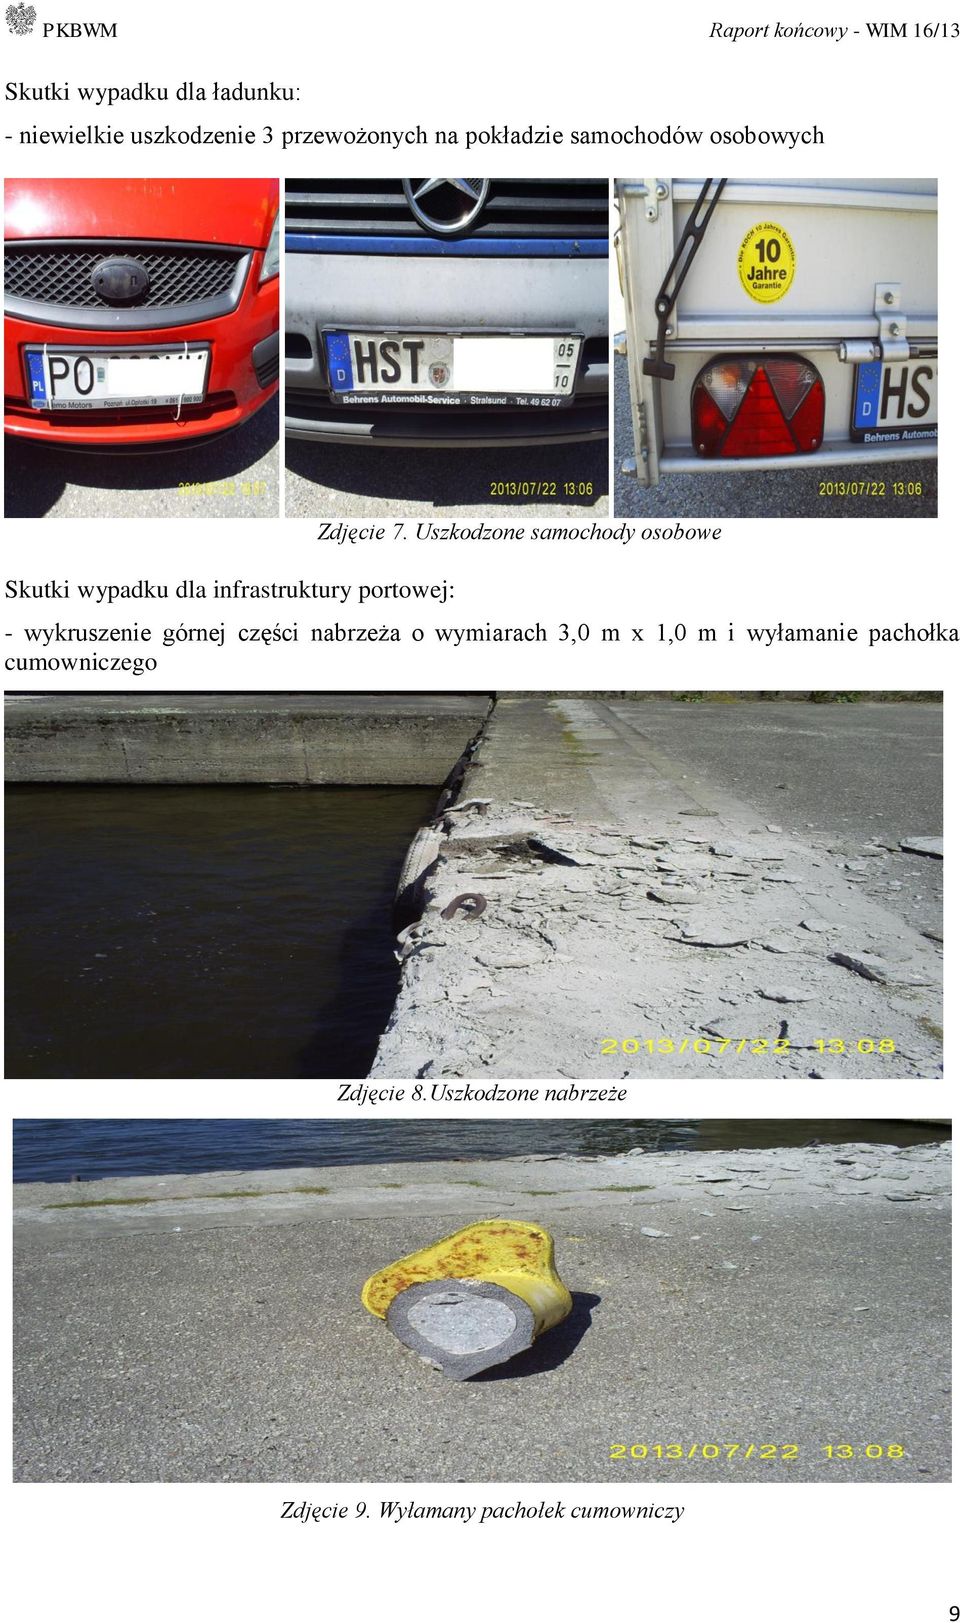 Uszkodzone samochody osobowe - wykruszenie górnej części nabrzeża o wymiarach 3,0 m x